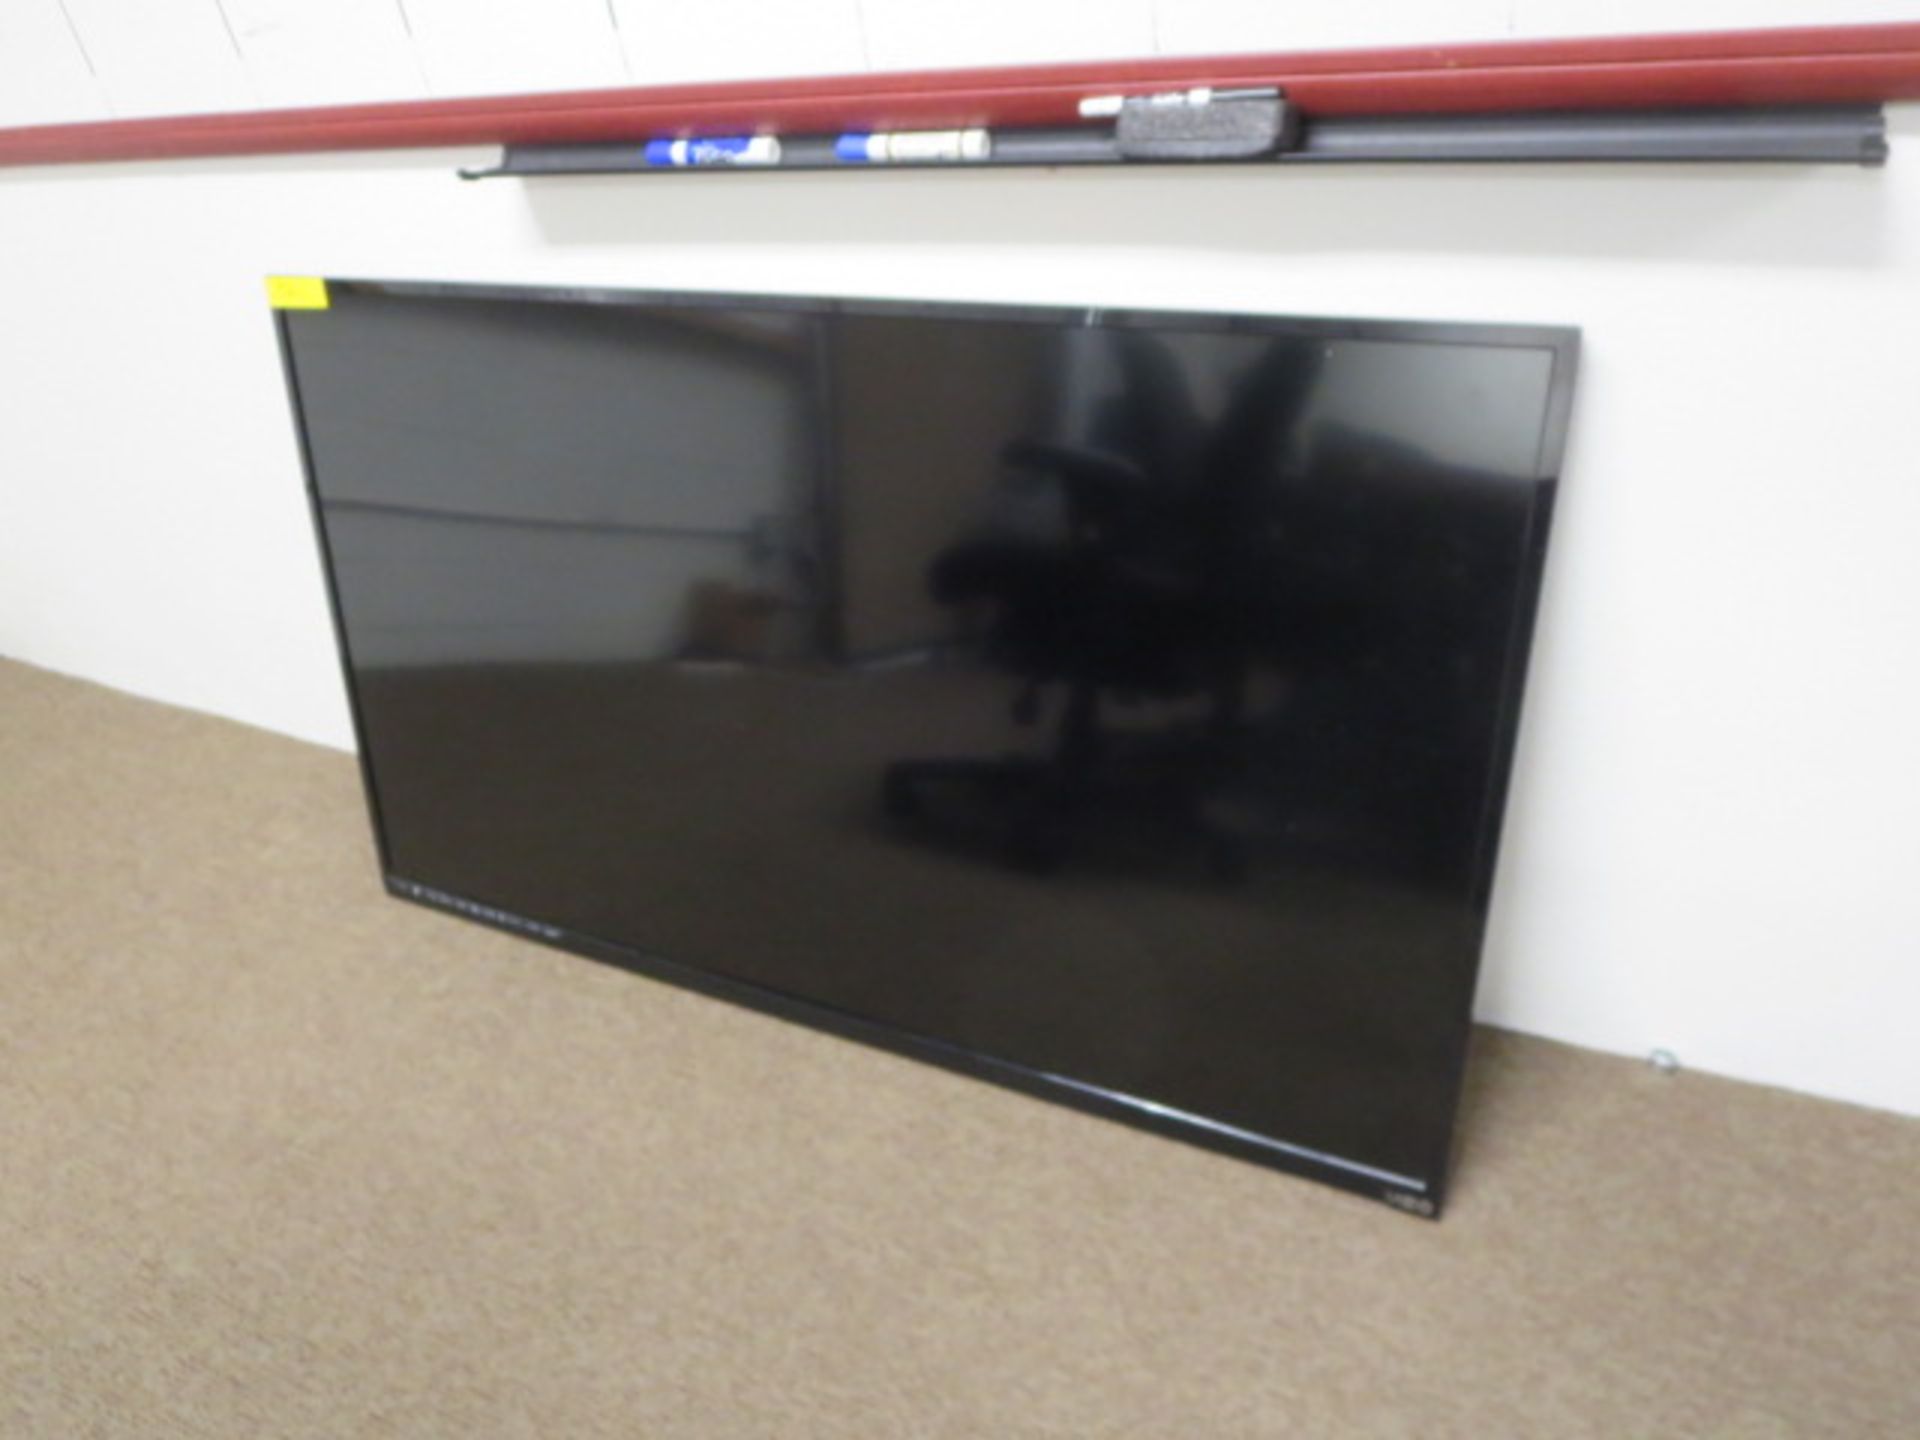 55in. Vizio HD LED TV, model E551i-A2